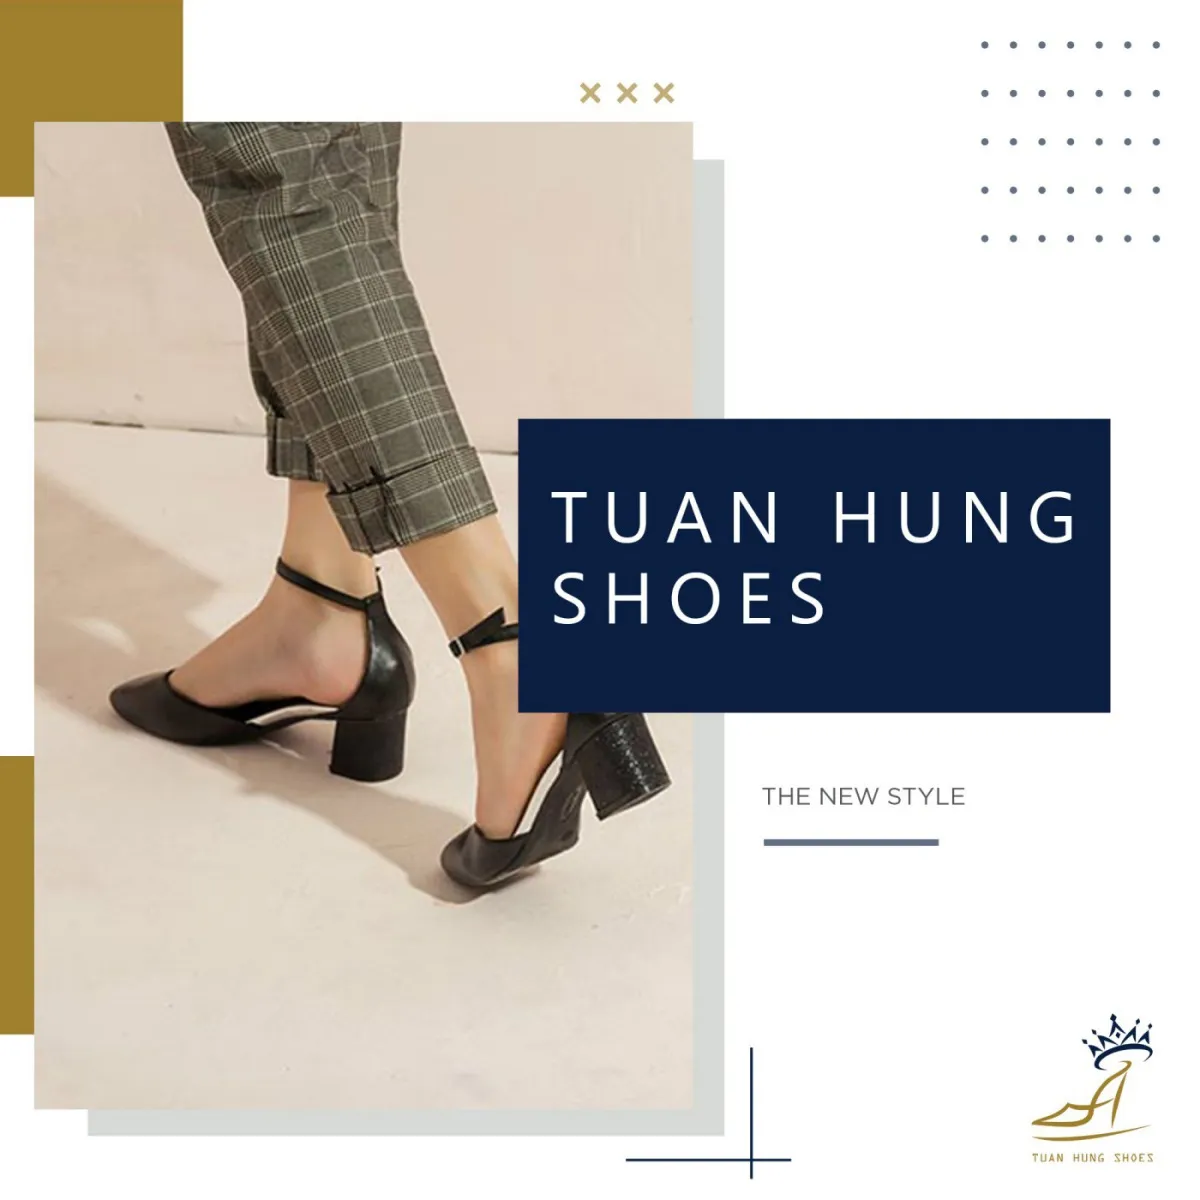 Công ty sản xuất giày dép Tuấn Hùng Shoes ra đời trở thành một đơn vị chuyên cung cấp giày dép giá sỉ với nguồn hàng ổn định